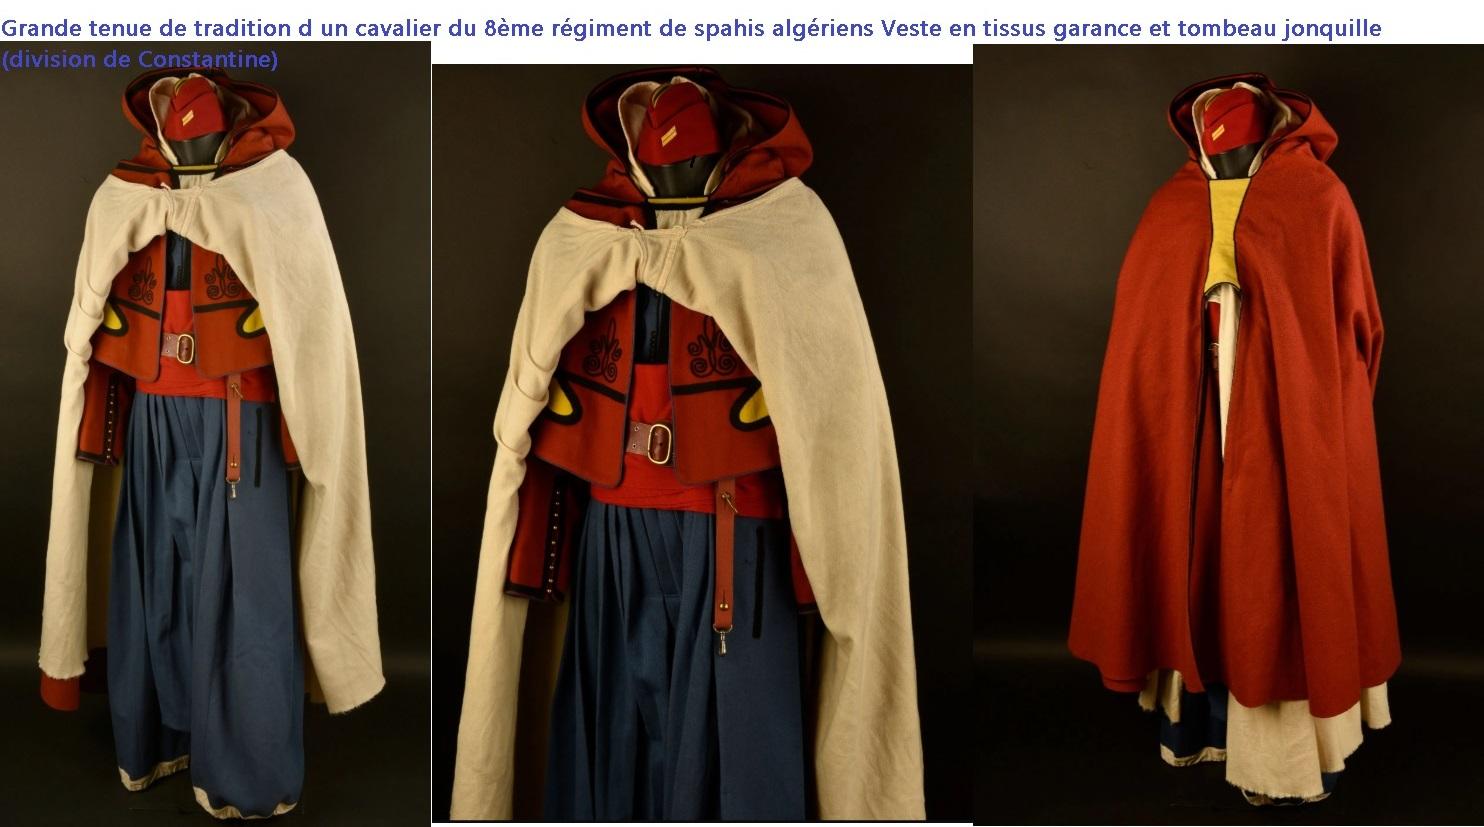 Grande tenue de tradition d un cavalier du 8eme regiment de spahis algeriens veste en tissus garance et tombeau jonquille